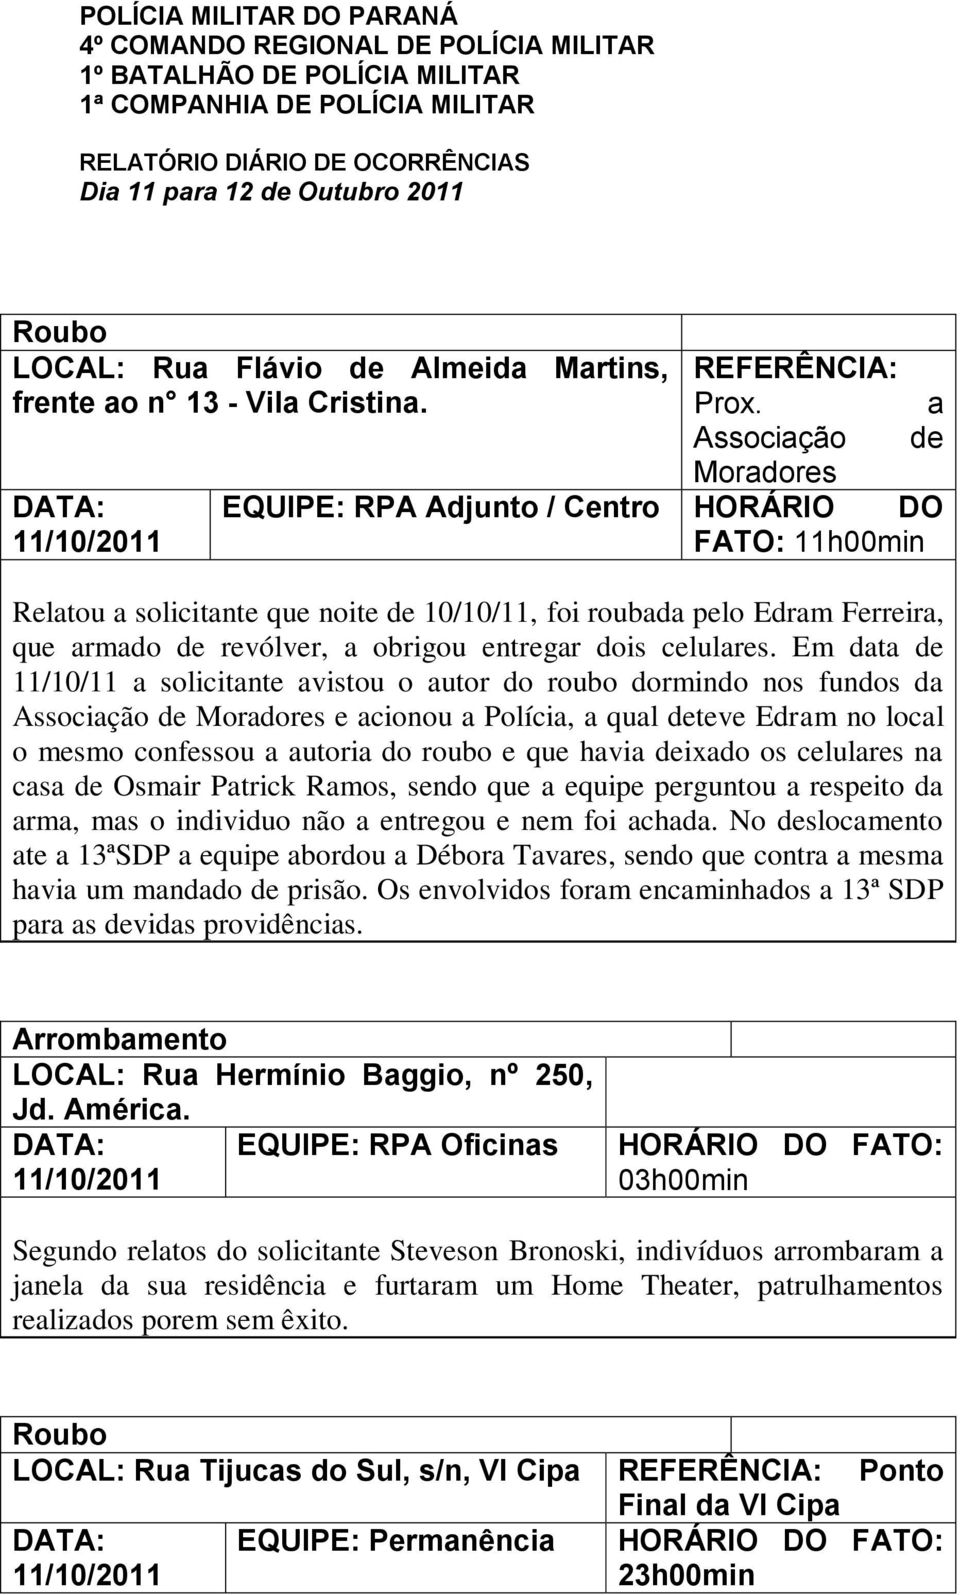 a Associação de Moradores EQUIPE: RPA Adjunto / Centro HORÁRIO DO FATO: 11h00min Relatou a solicitante que noite de 10/10/11, foi roubada pelo Edram Ferreira, que armado de revólver, a obrigou